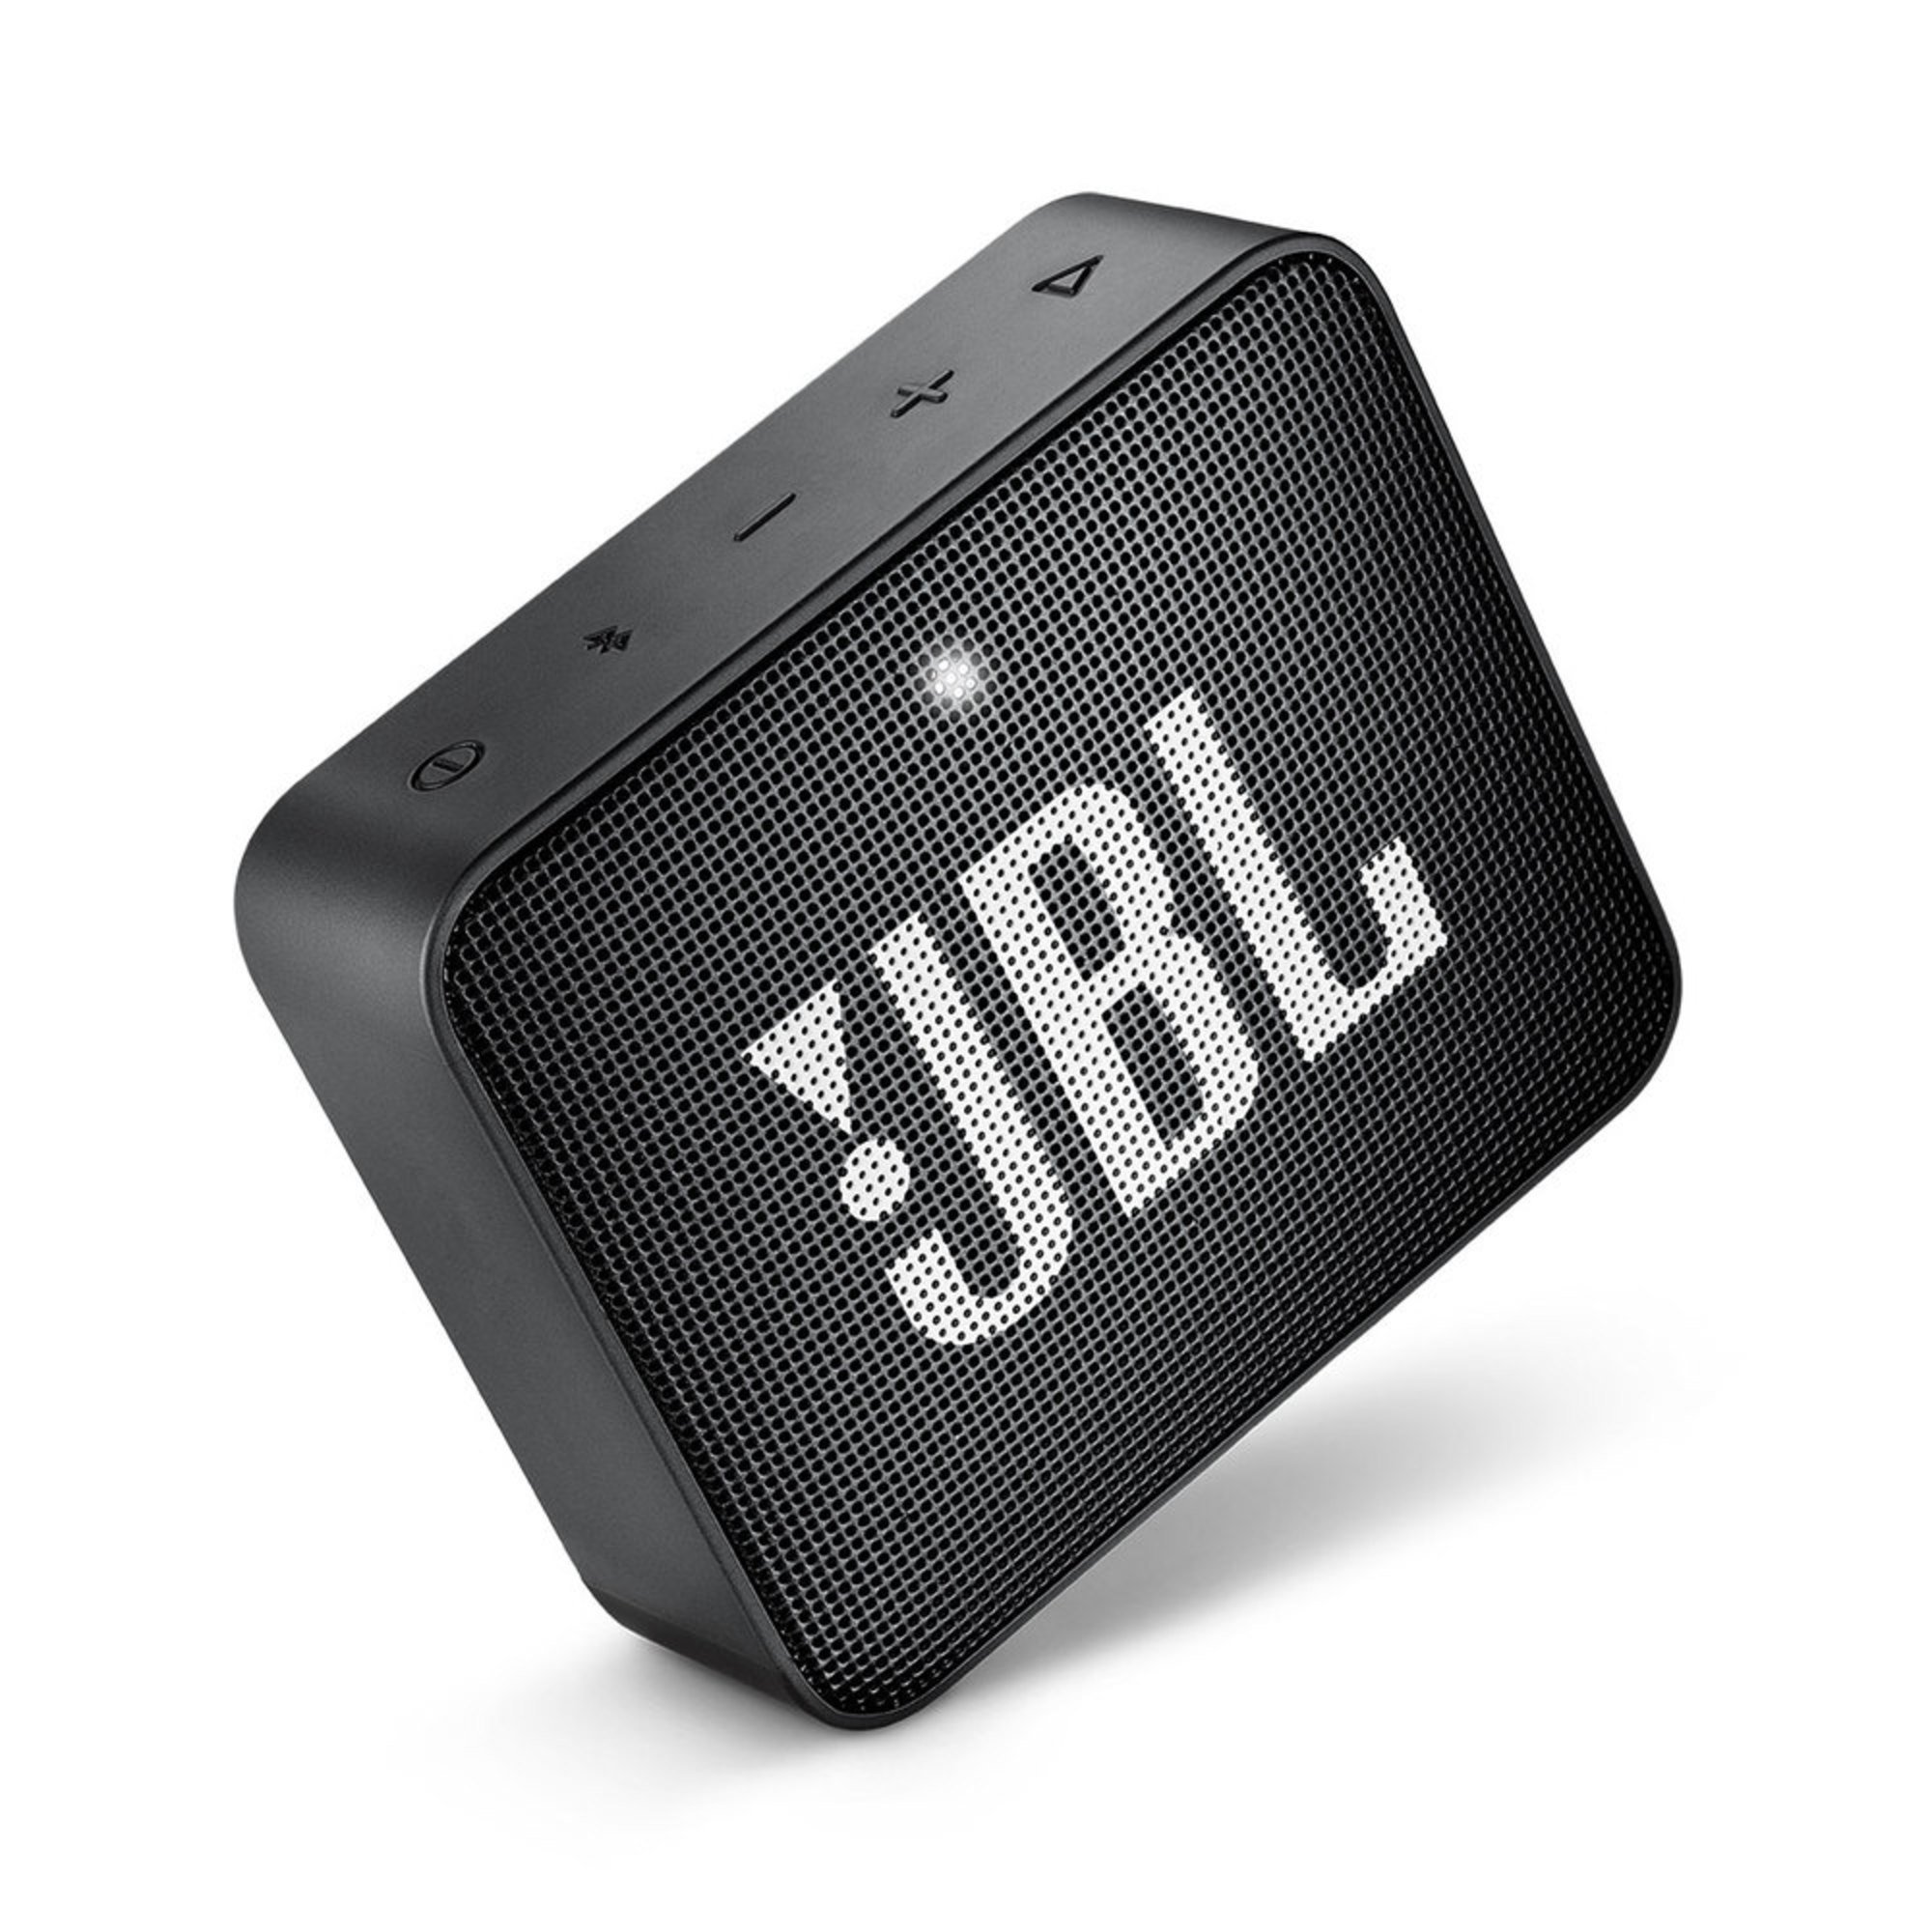 jbl speaker